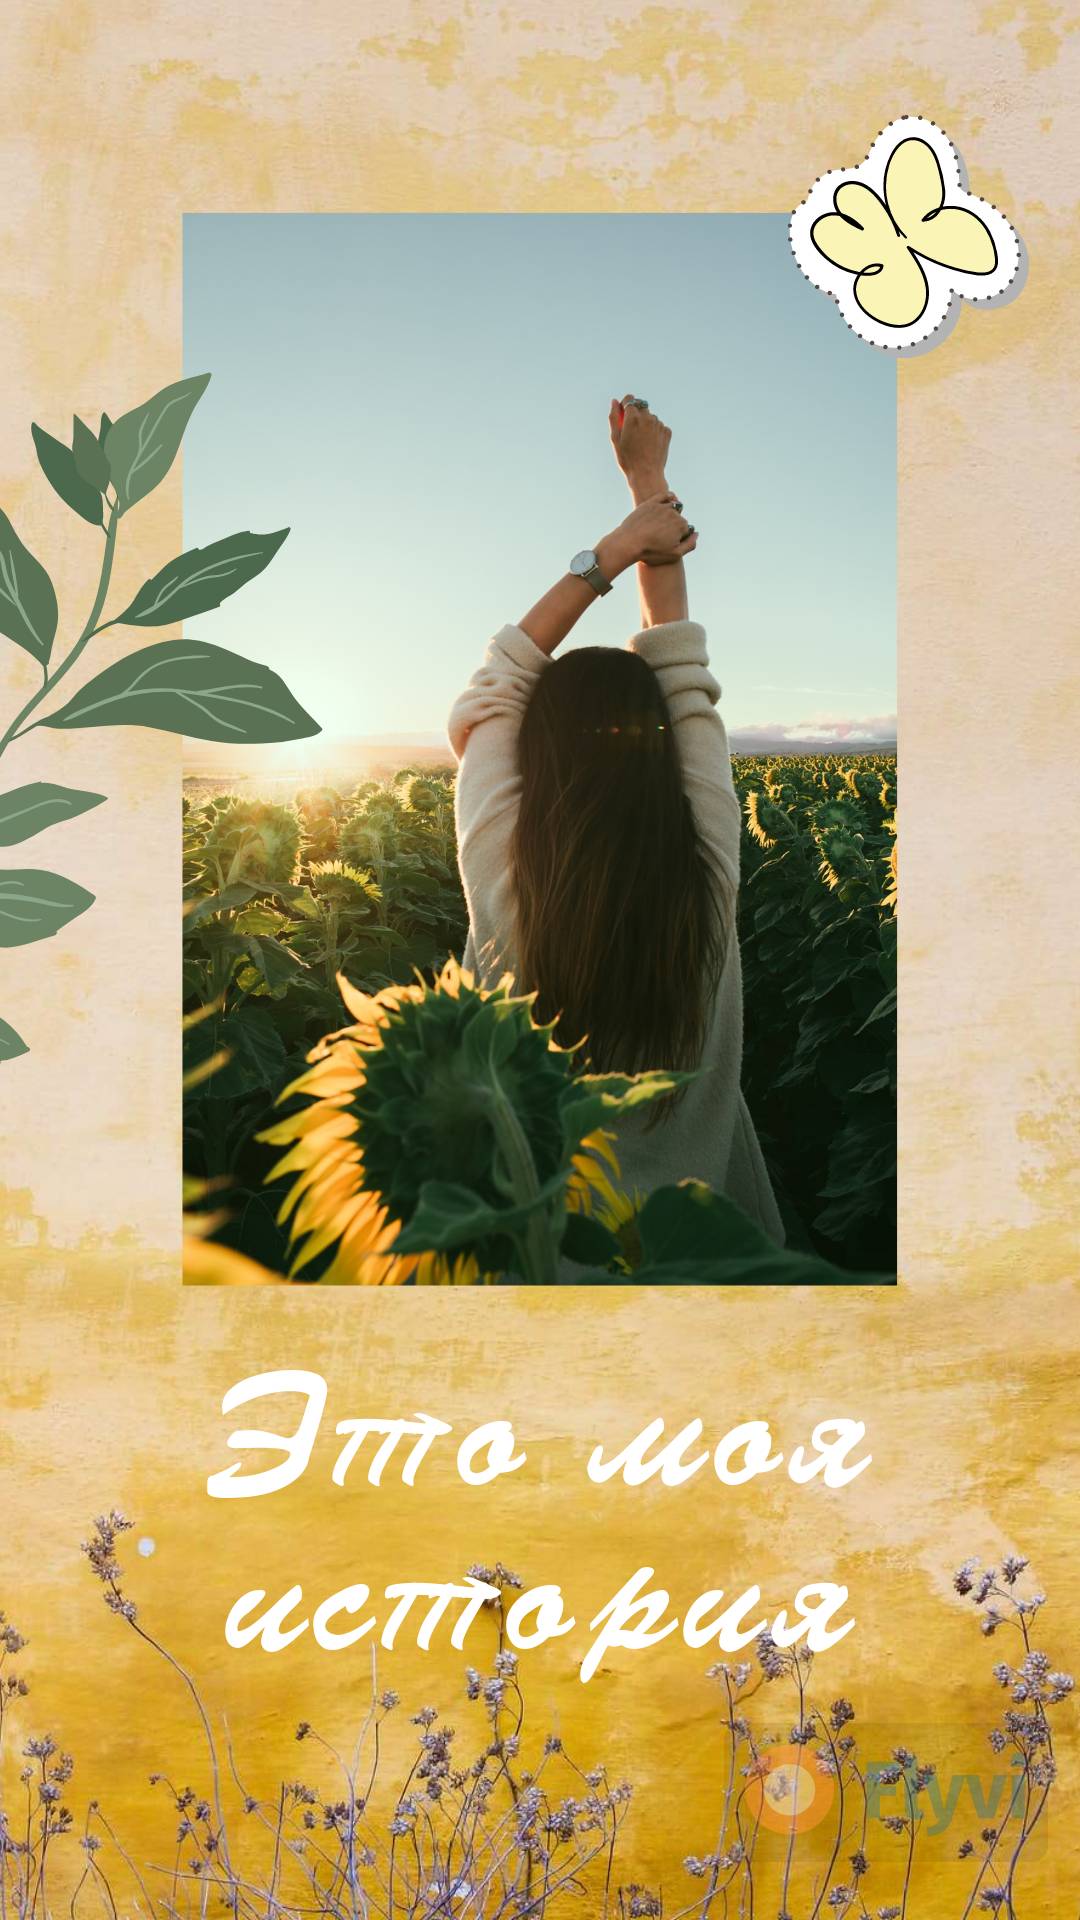 Винтажная сторис с фактурной штукатуркой, полевыми цветами, и девушкой на рассвете в поле с подсолнухами